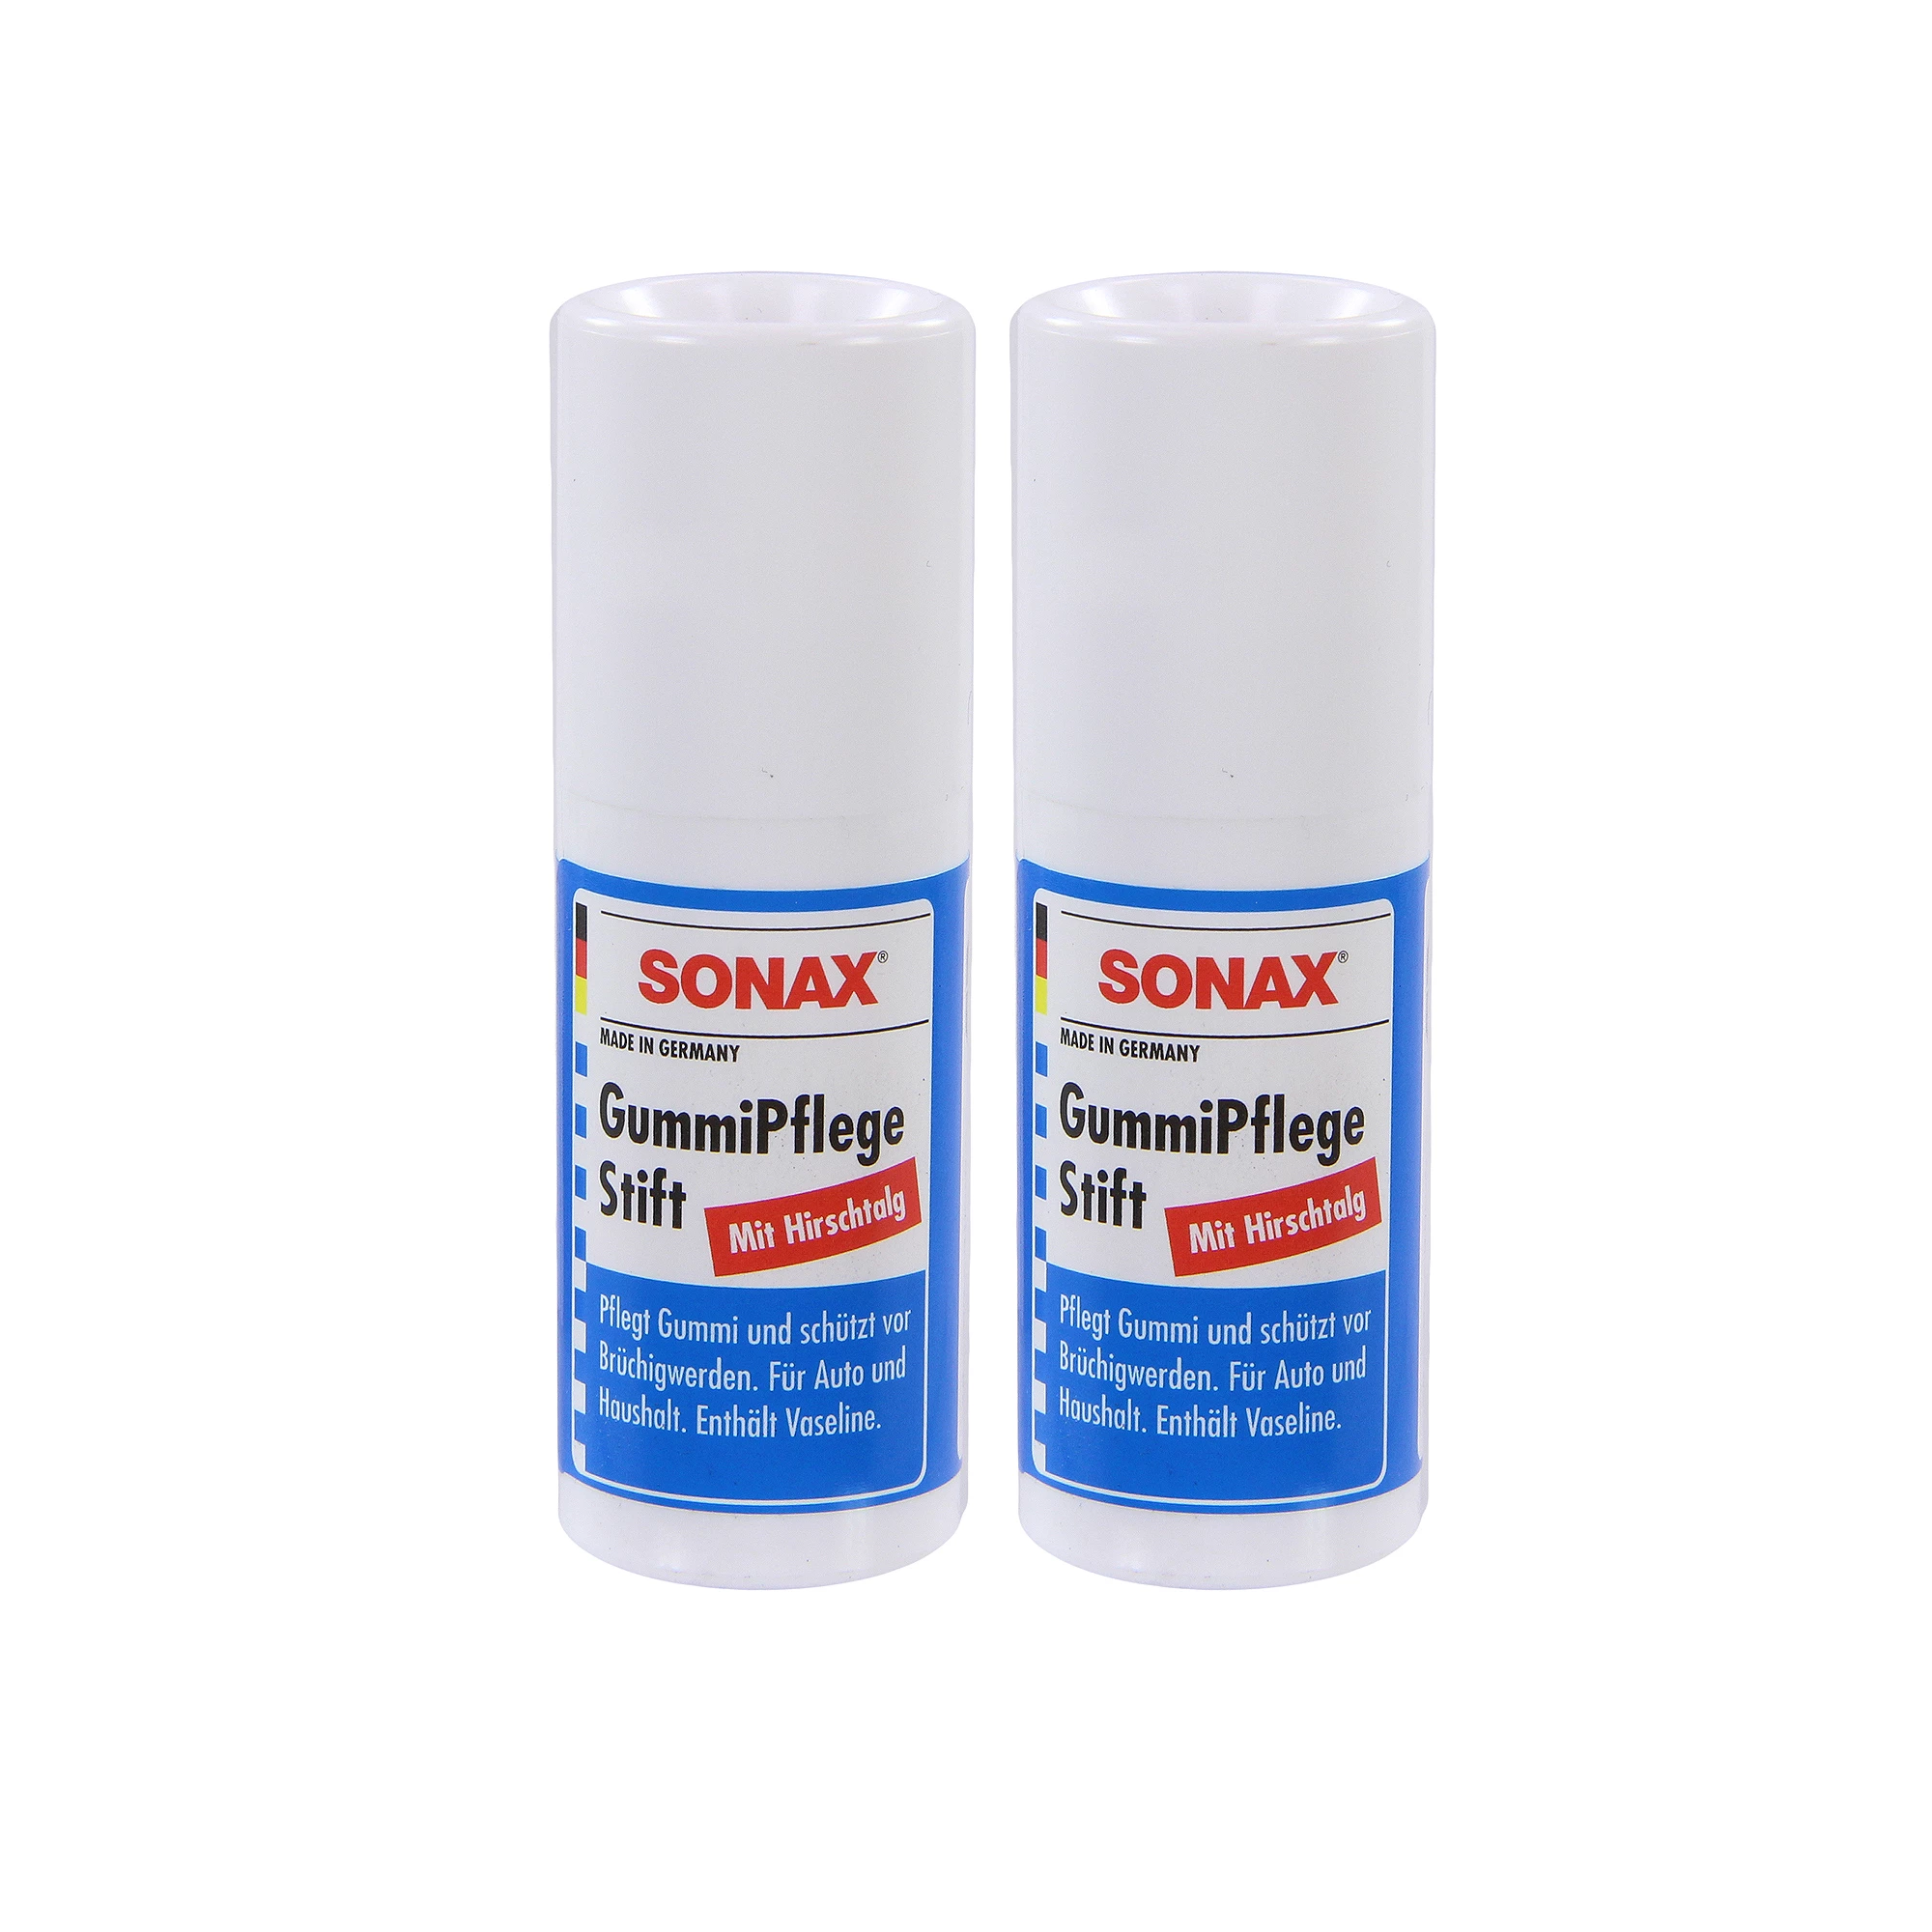 SONAX GummiPfleger online kaufen